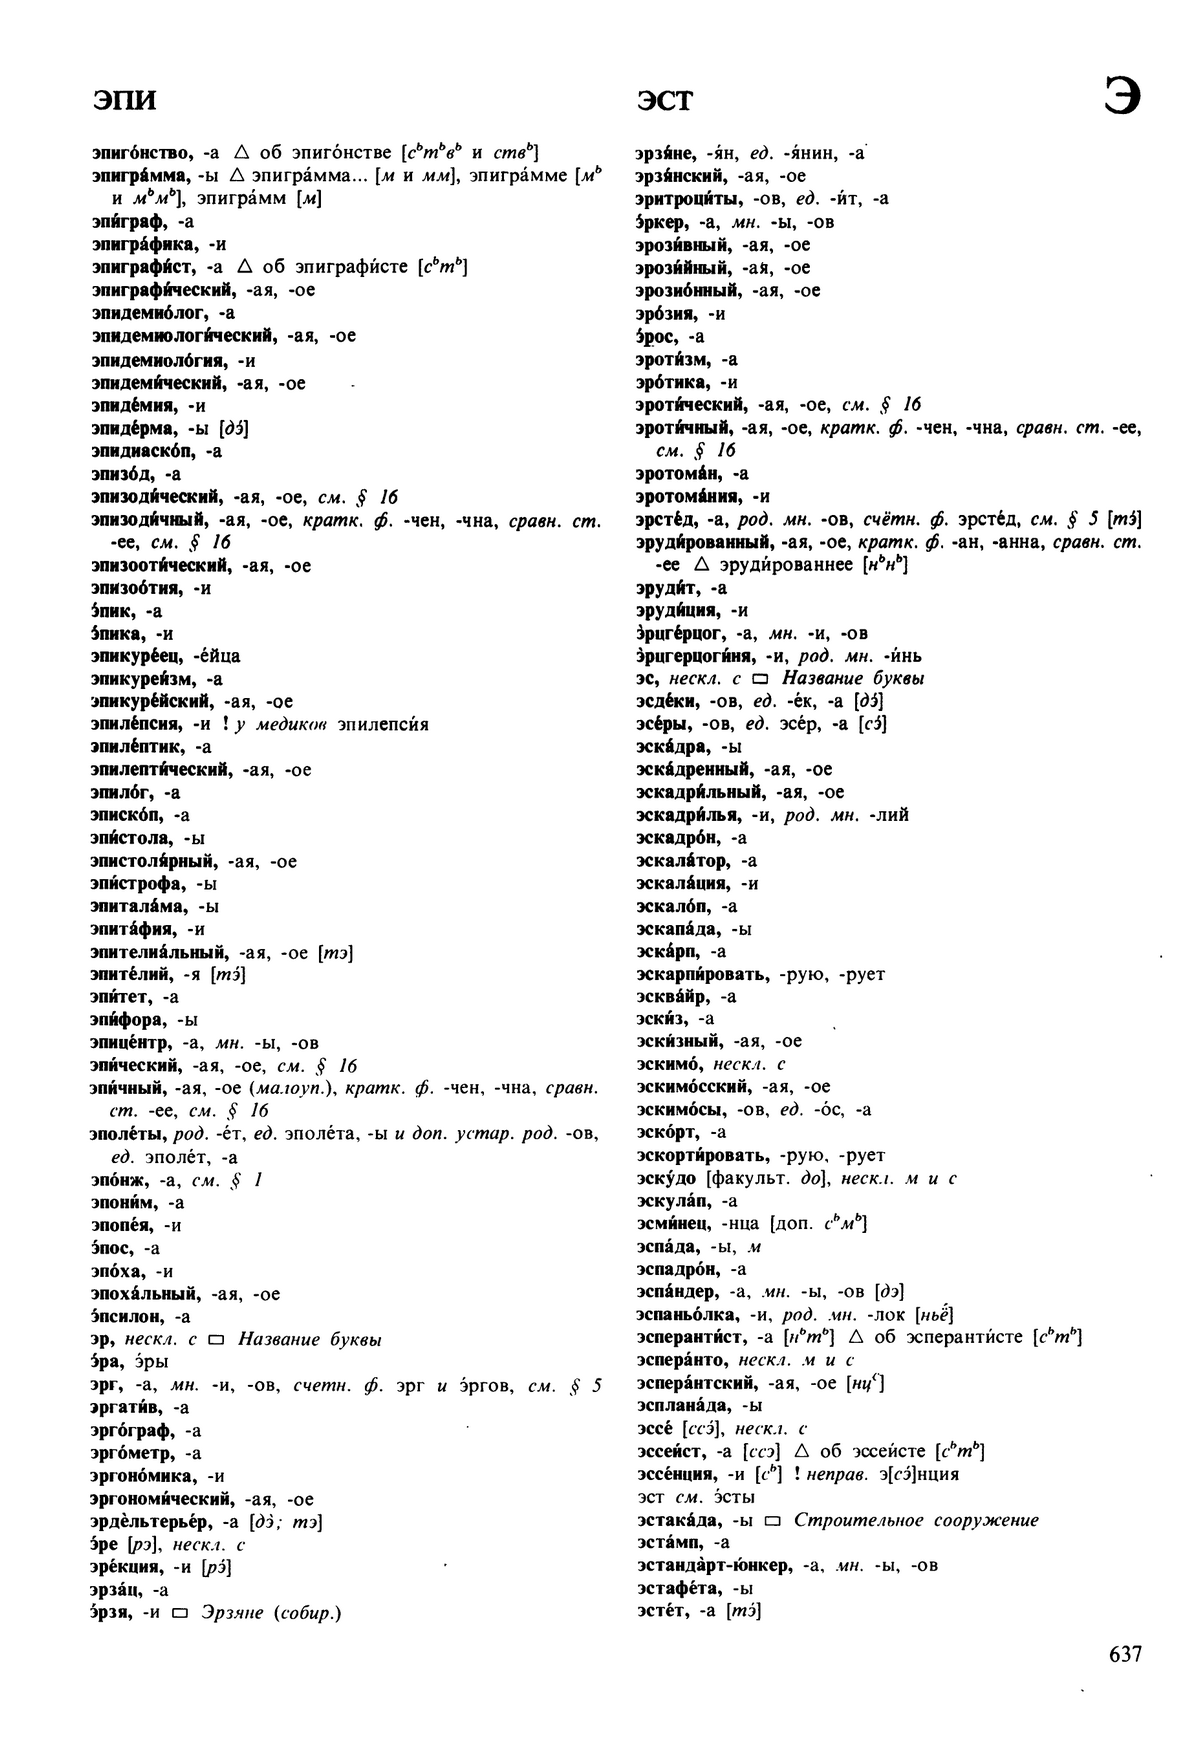 Фотокопия pdf / скан страницы 637 орфоэпического словаря под редакцией Аванесова (5 издание, 1989 год)